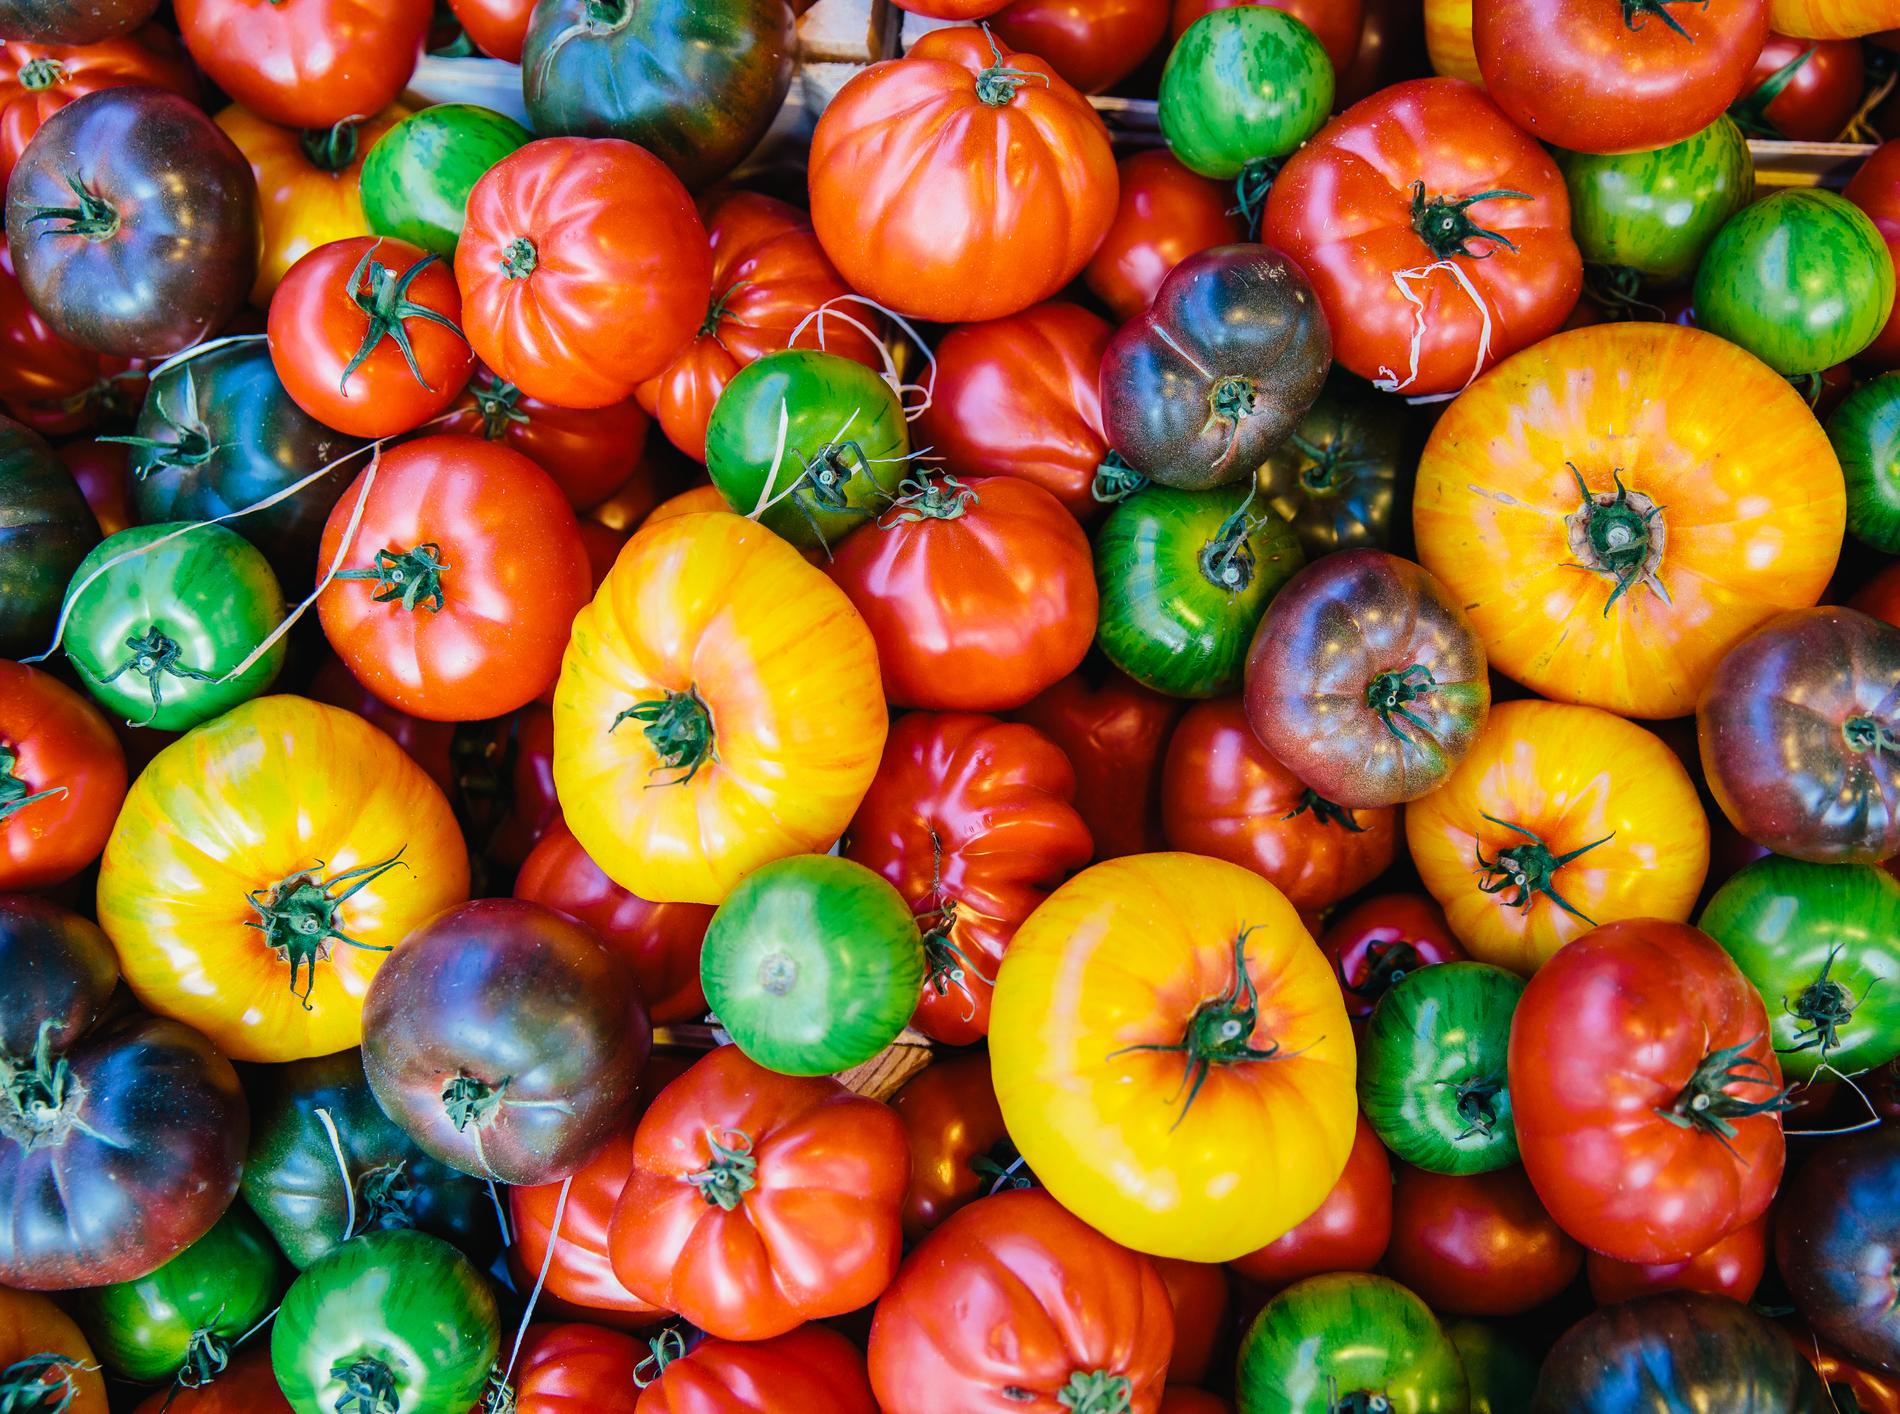 Six questions sur les tomates : quand en manger, comment les choisir ?